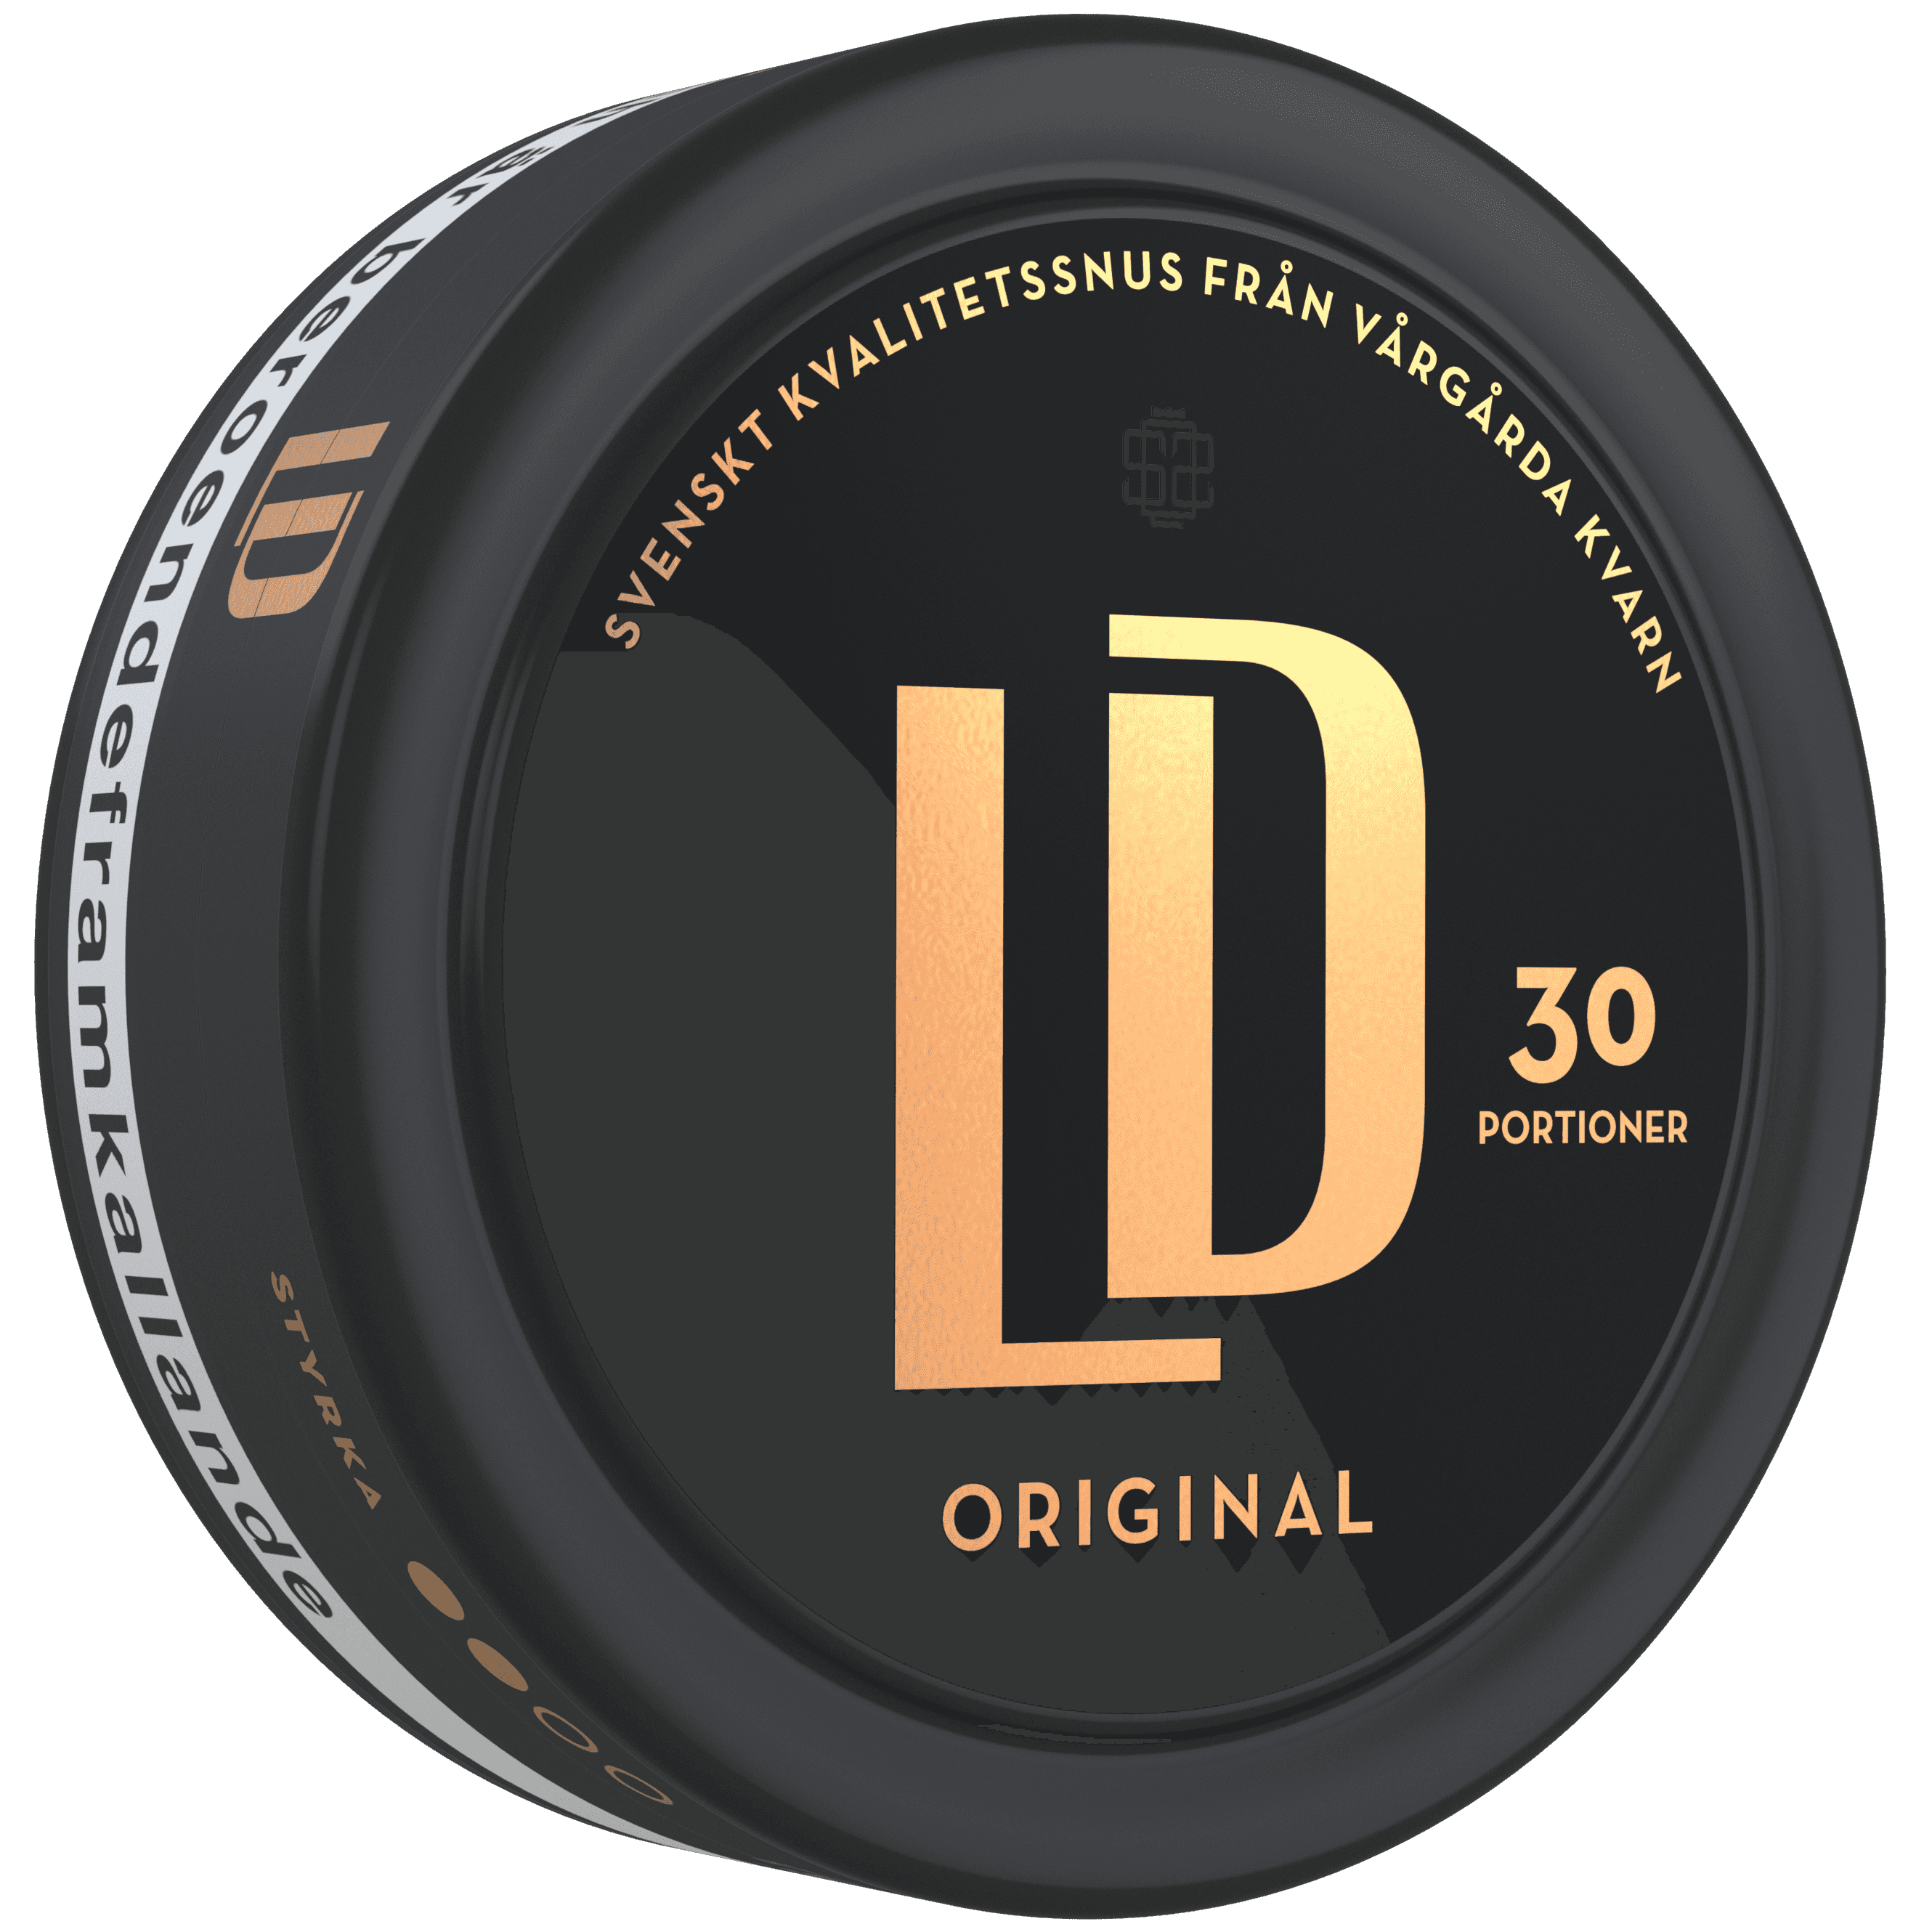 LD 30 Original